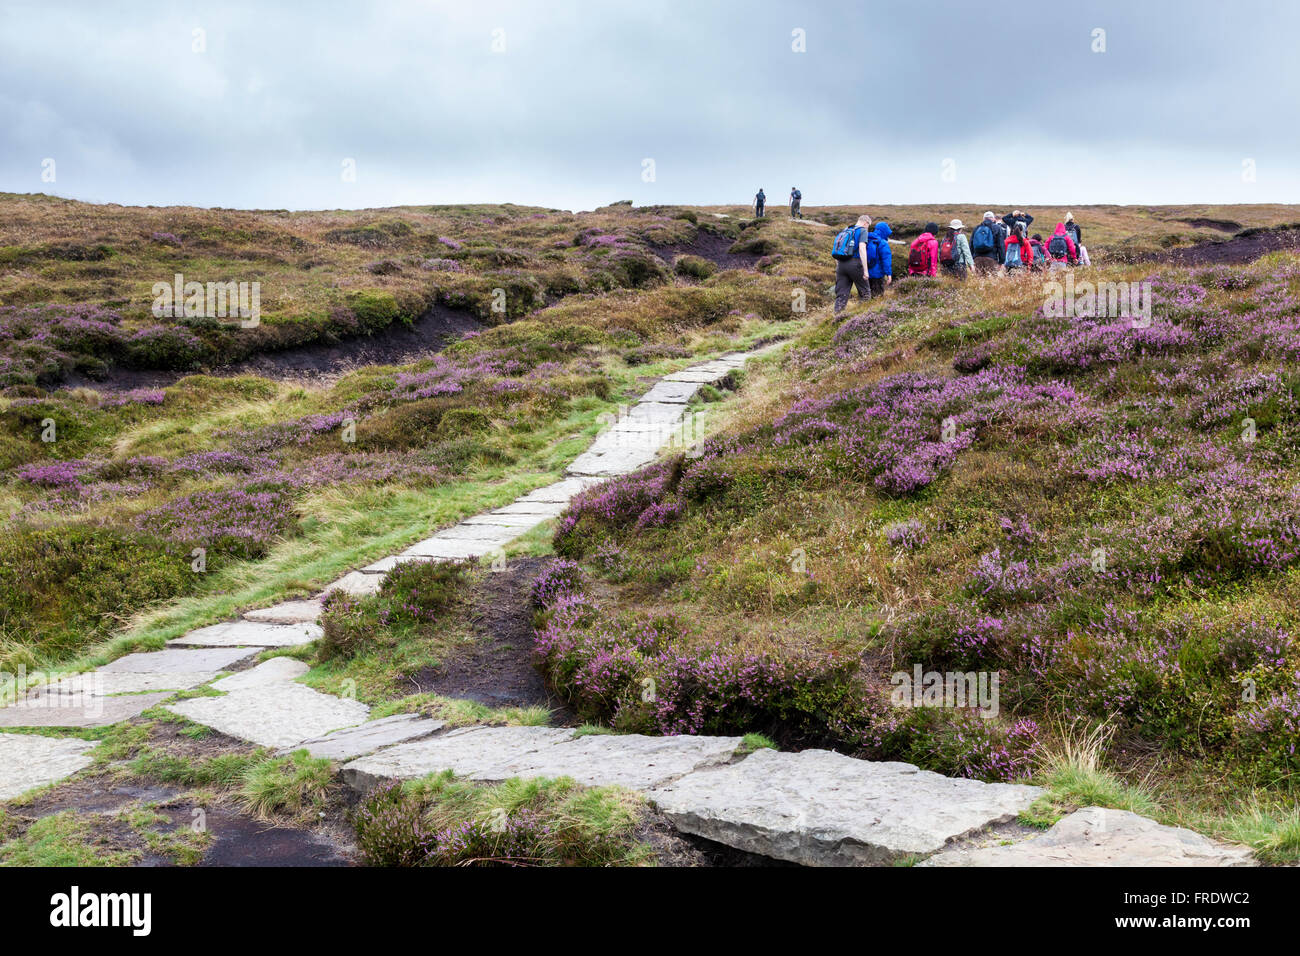 Stone flag Fußweg auf Moorland zur Vermeidung von Erosion des Moores gelegt. Kinder Scout, Derbyshire, Peak District, England, Vereinigtes Königreich Stockfoto